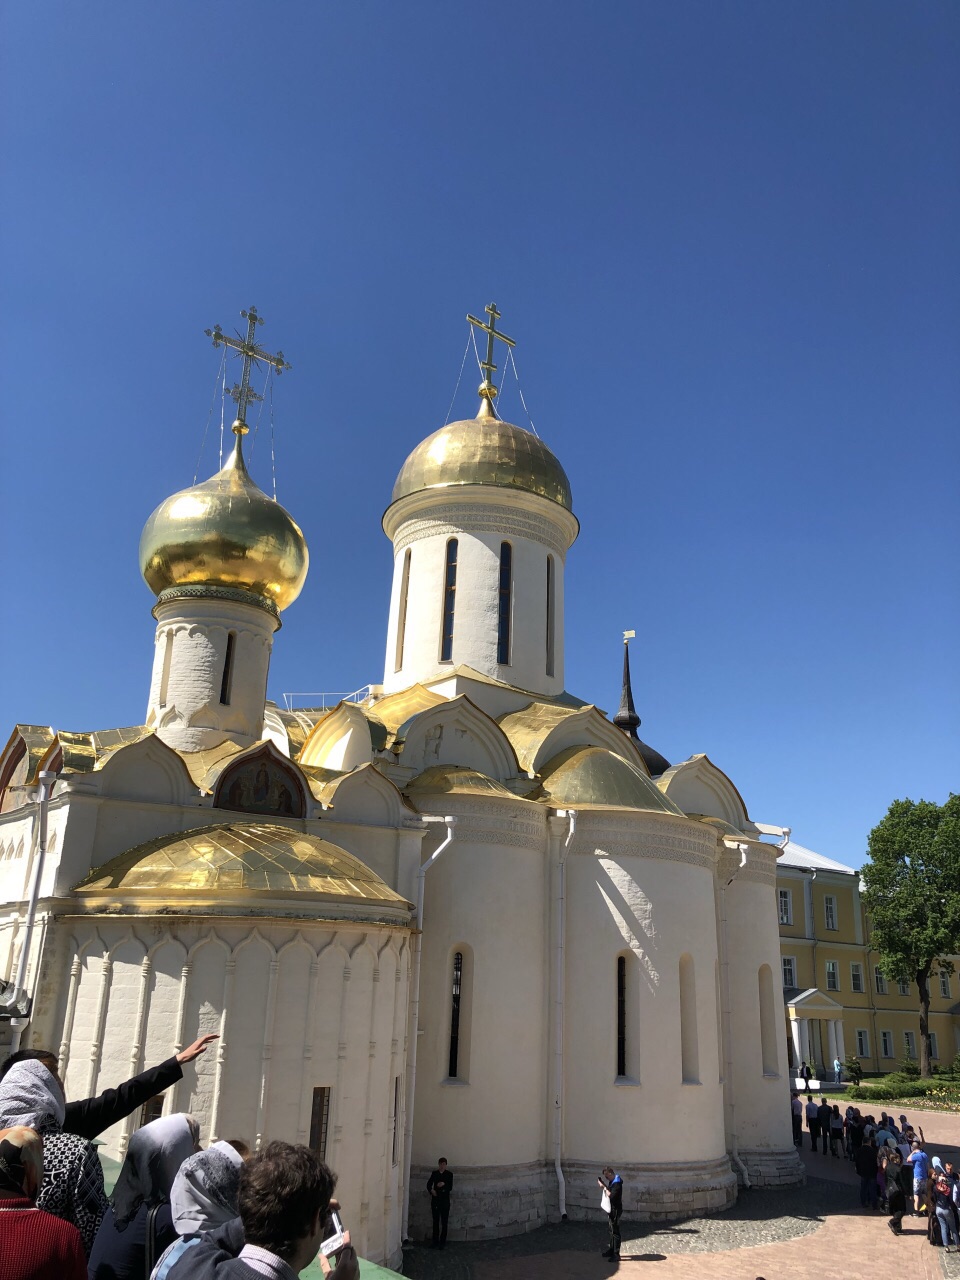 遇见莫斯科第二天——莫斯科郊外——谢尔盖耶夫圣三一教堂区